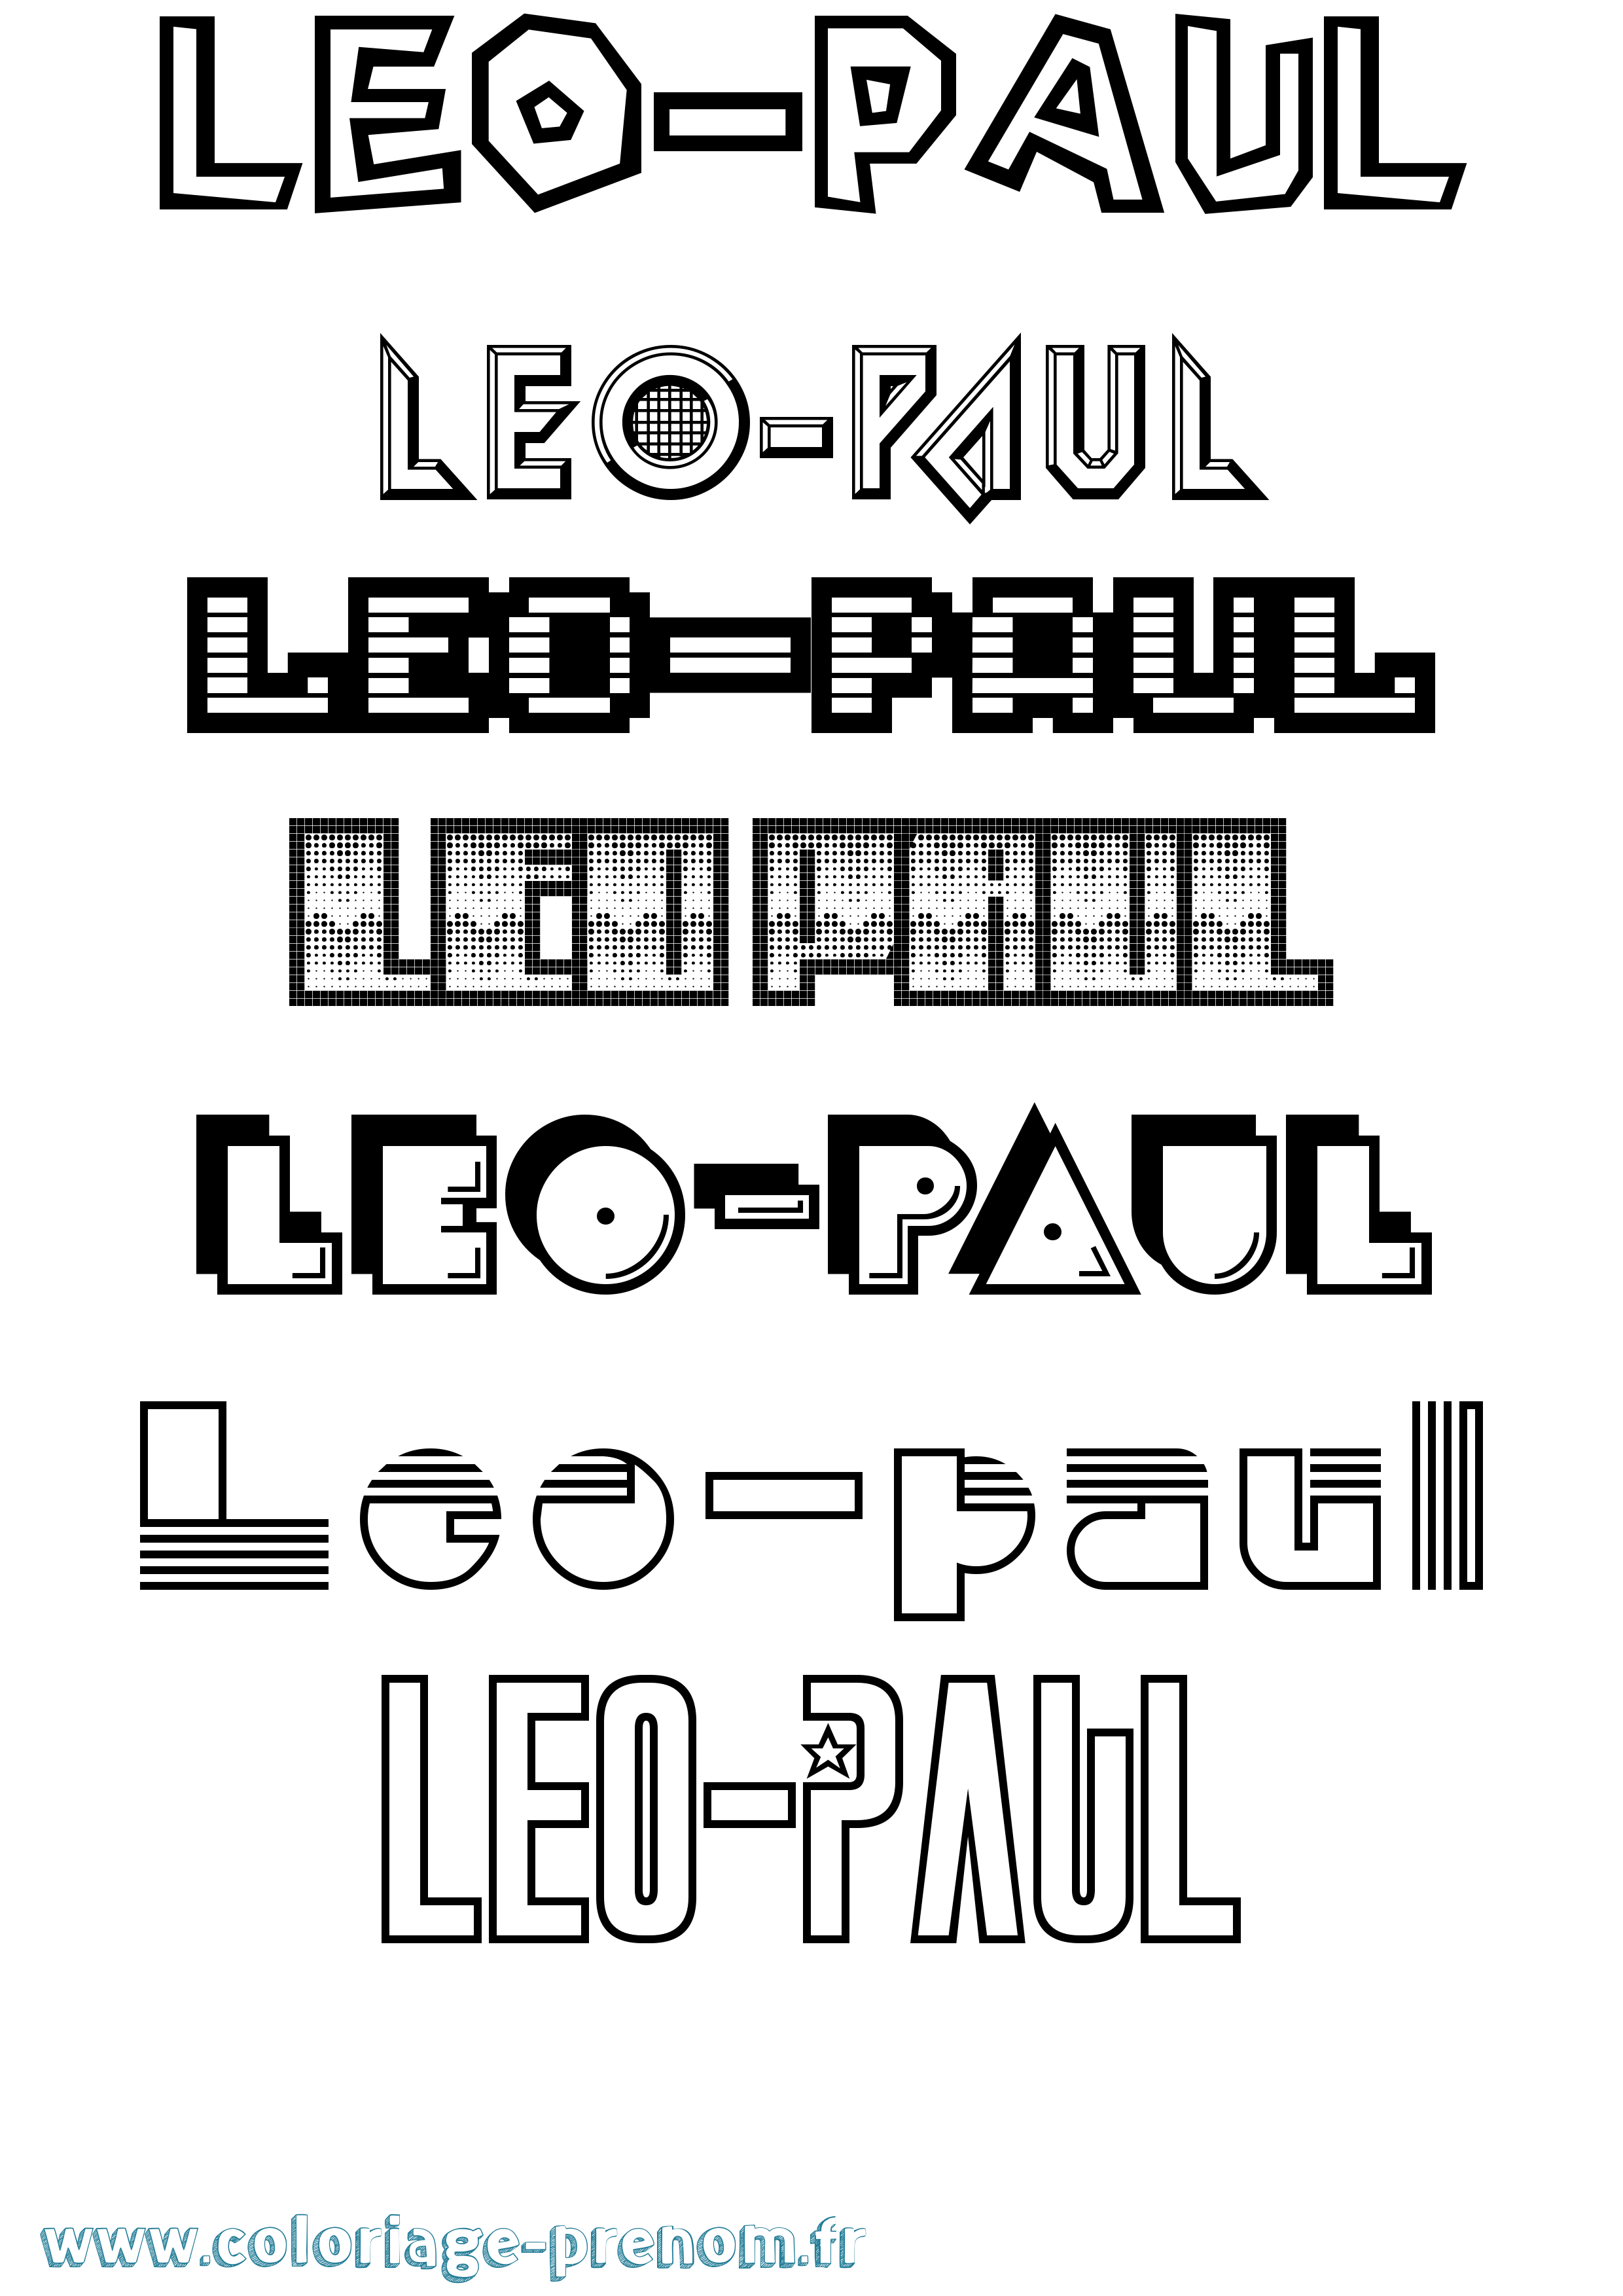 Coloriage prénom Leo-Paul Jeux Vidéos